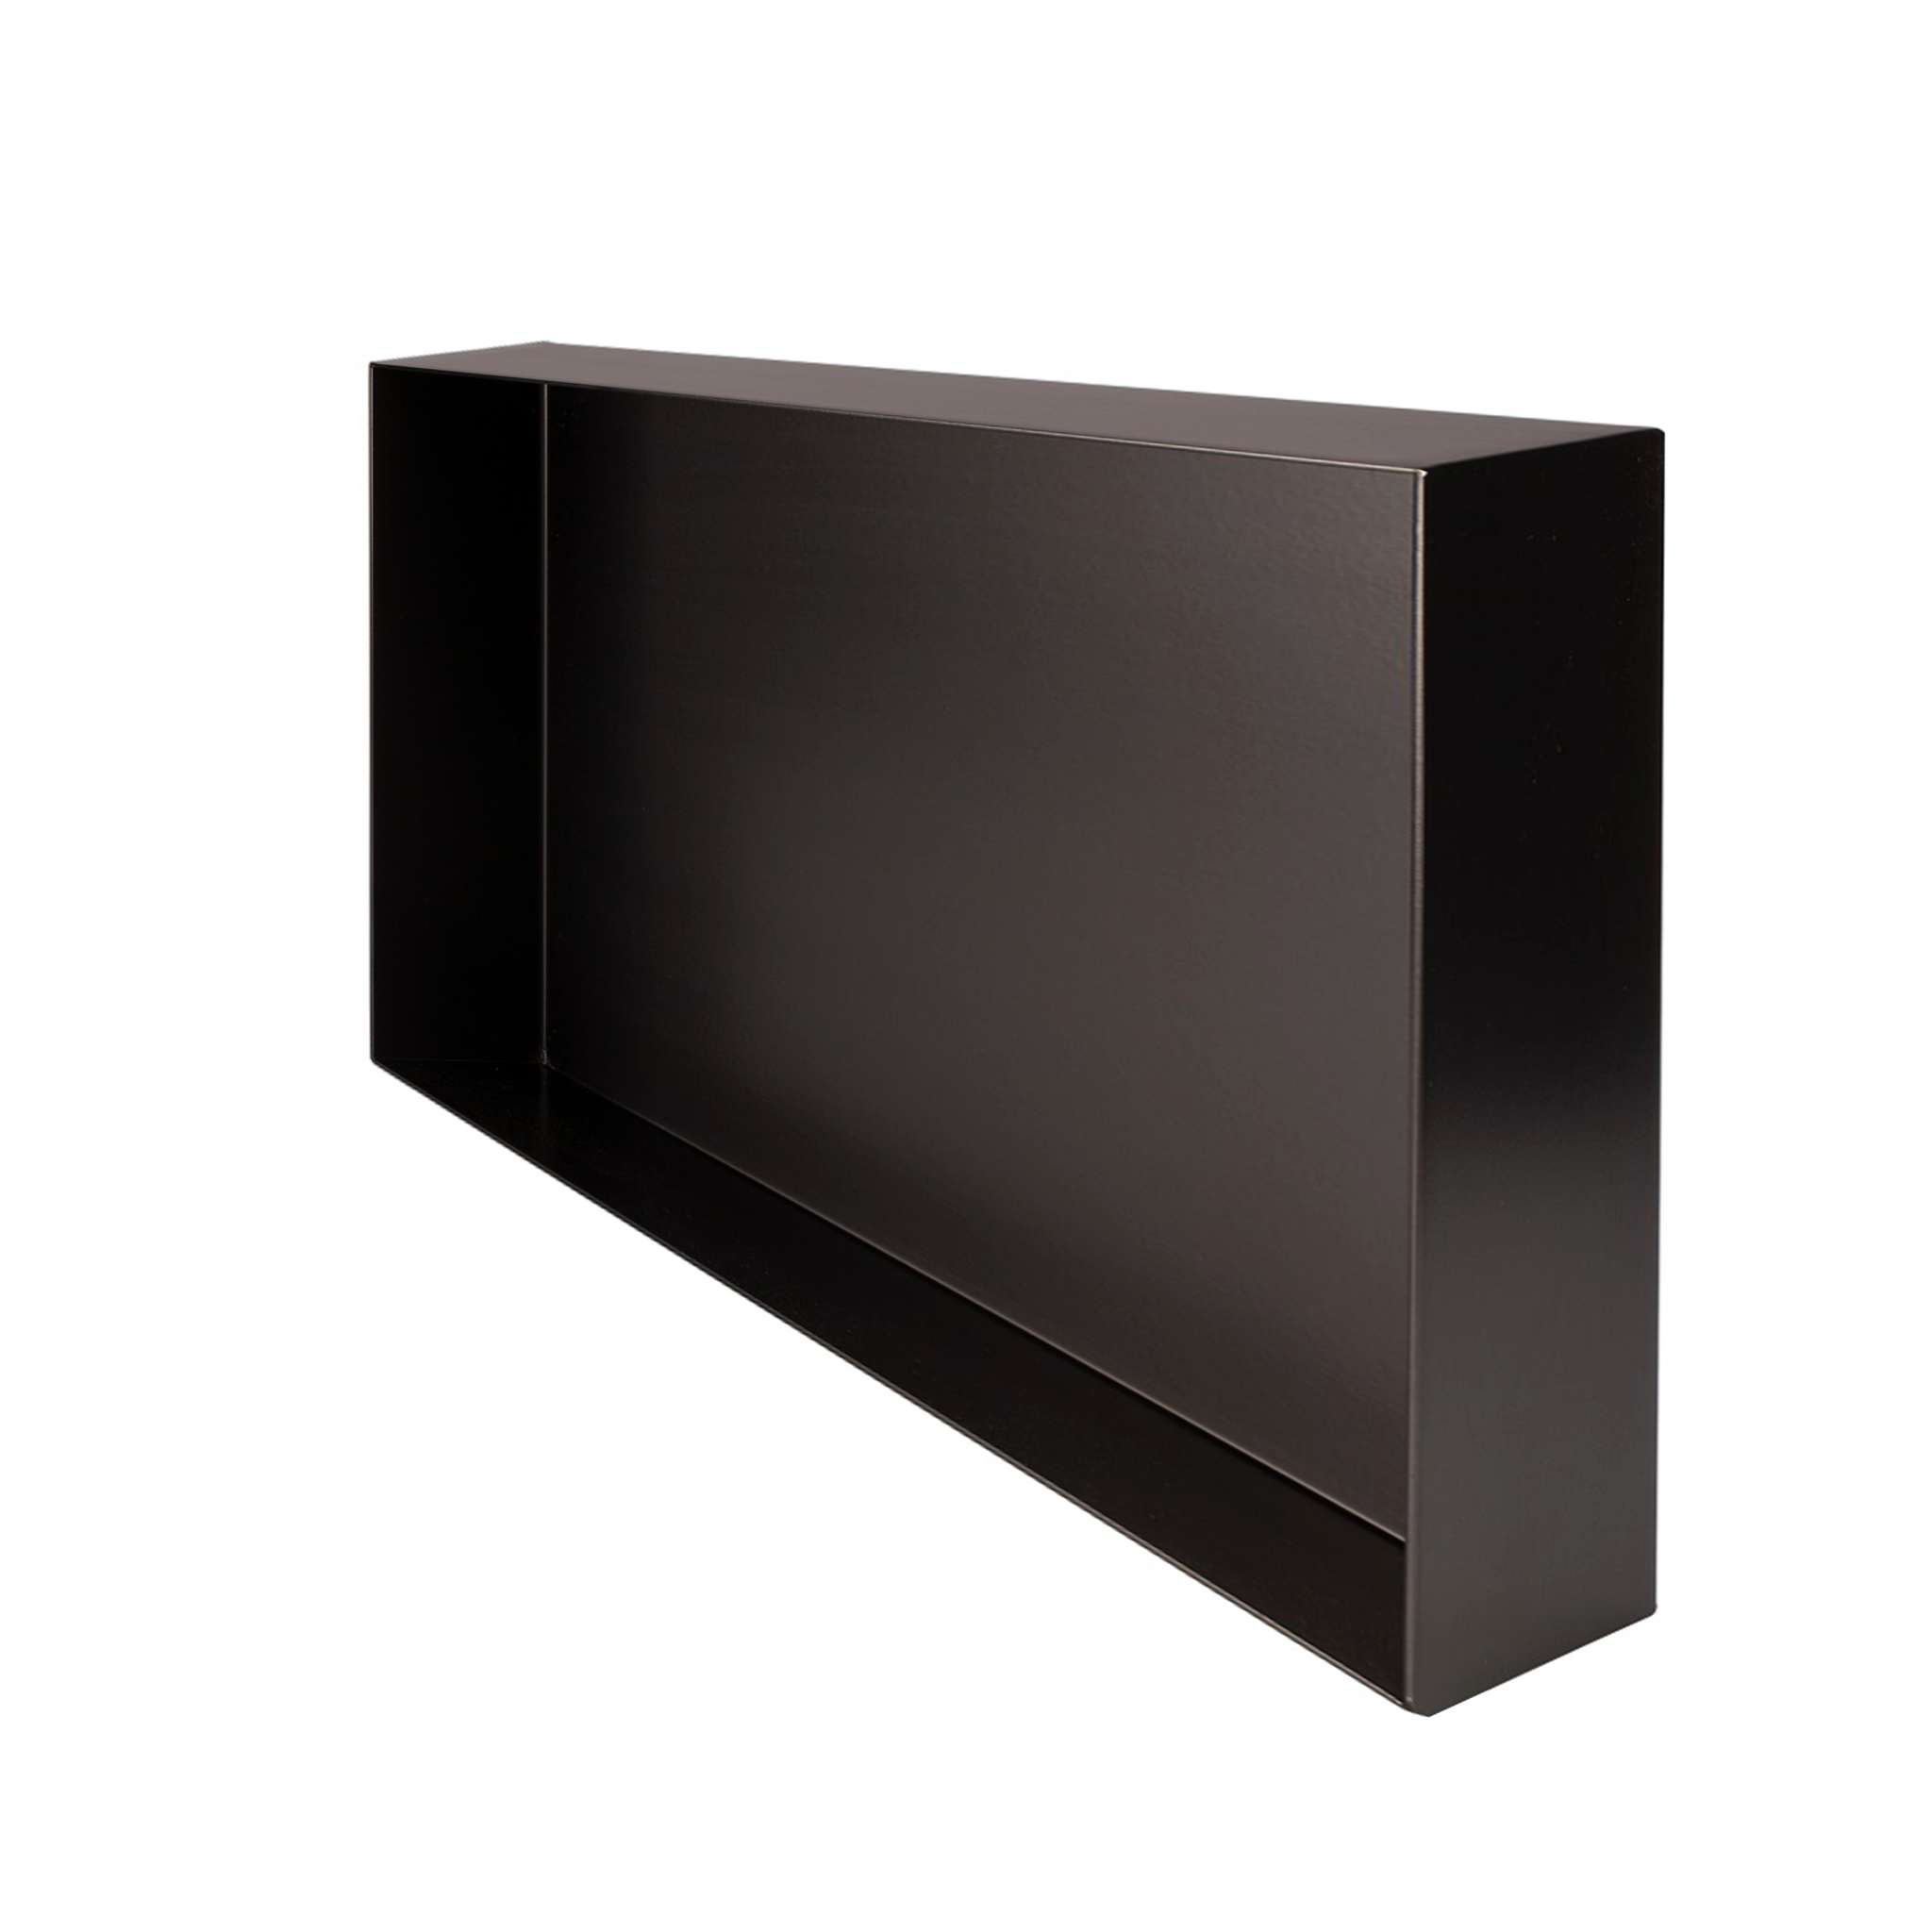 Valli Home – V-Box, Nicchia portaoggetti in Metallo smaltato color Nero, Misura 30X60 P. 10 cm – V-BOX.MLLO.30X60.NR